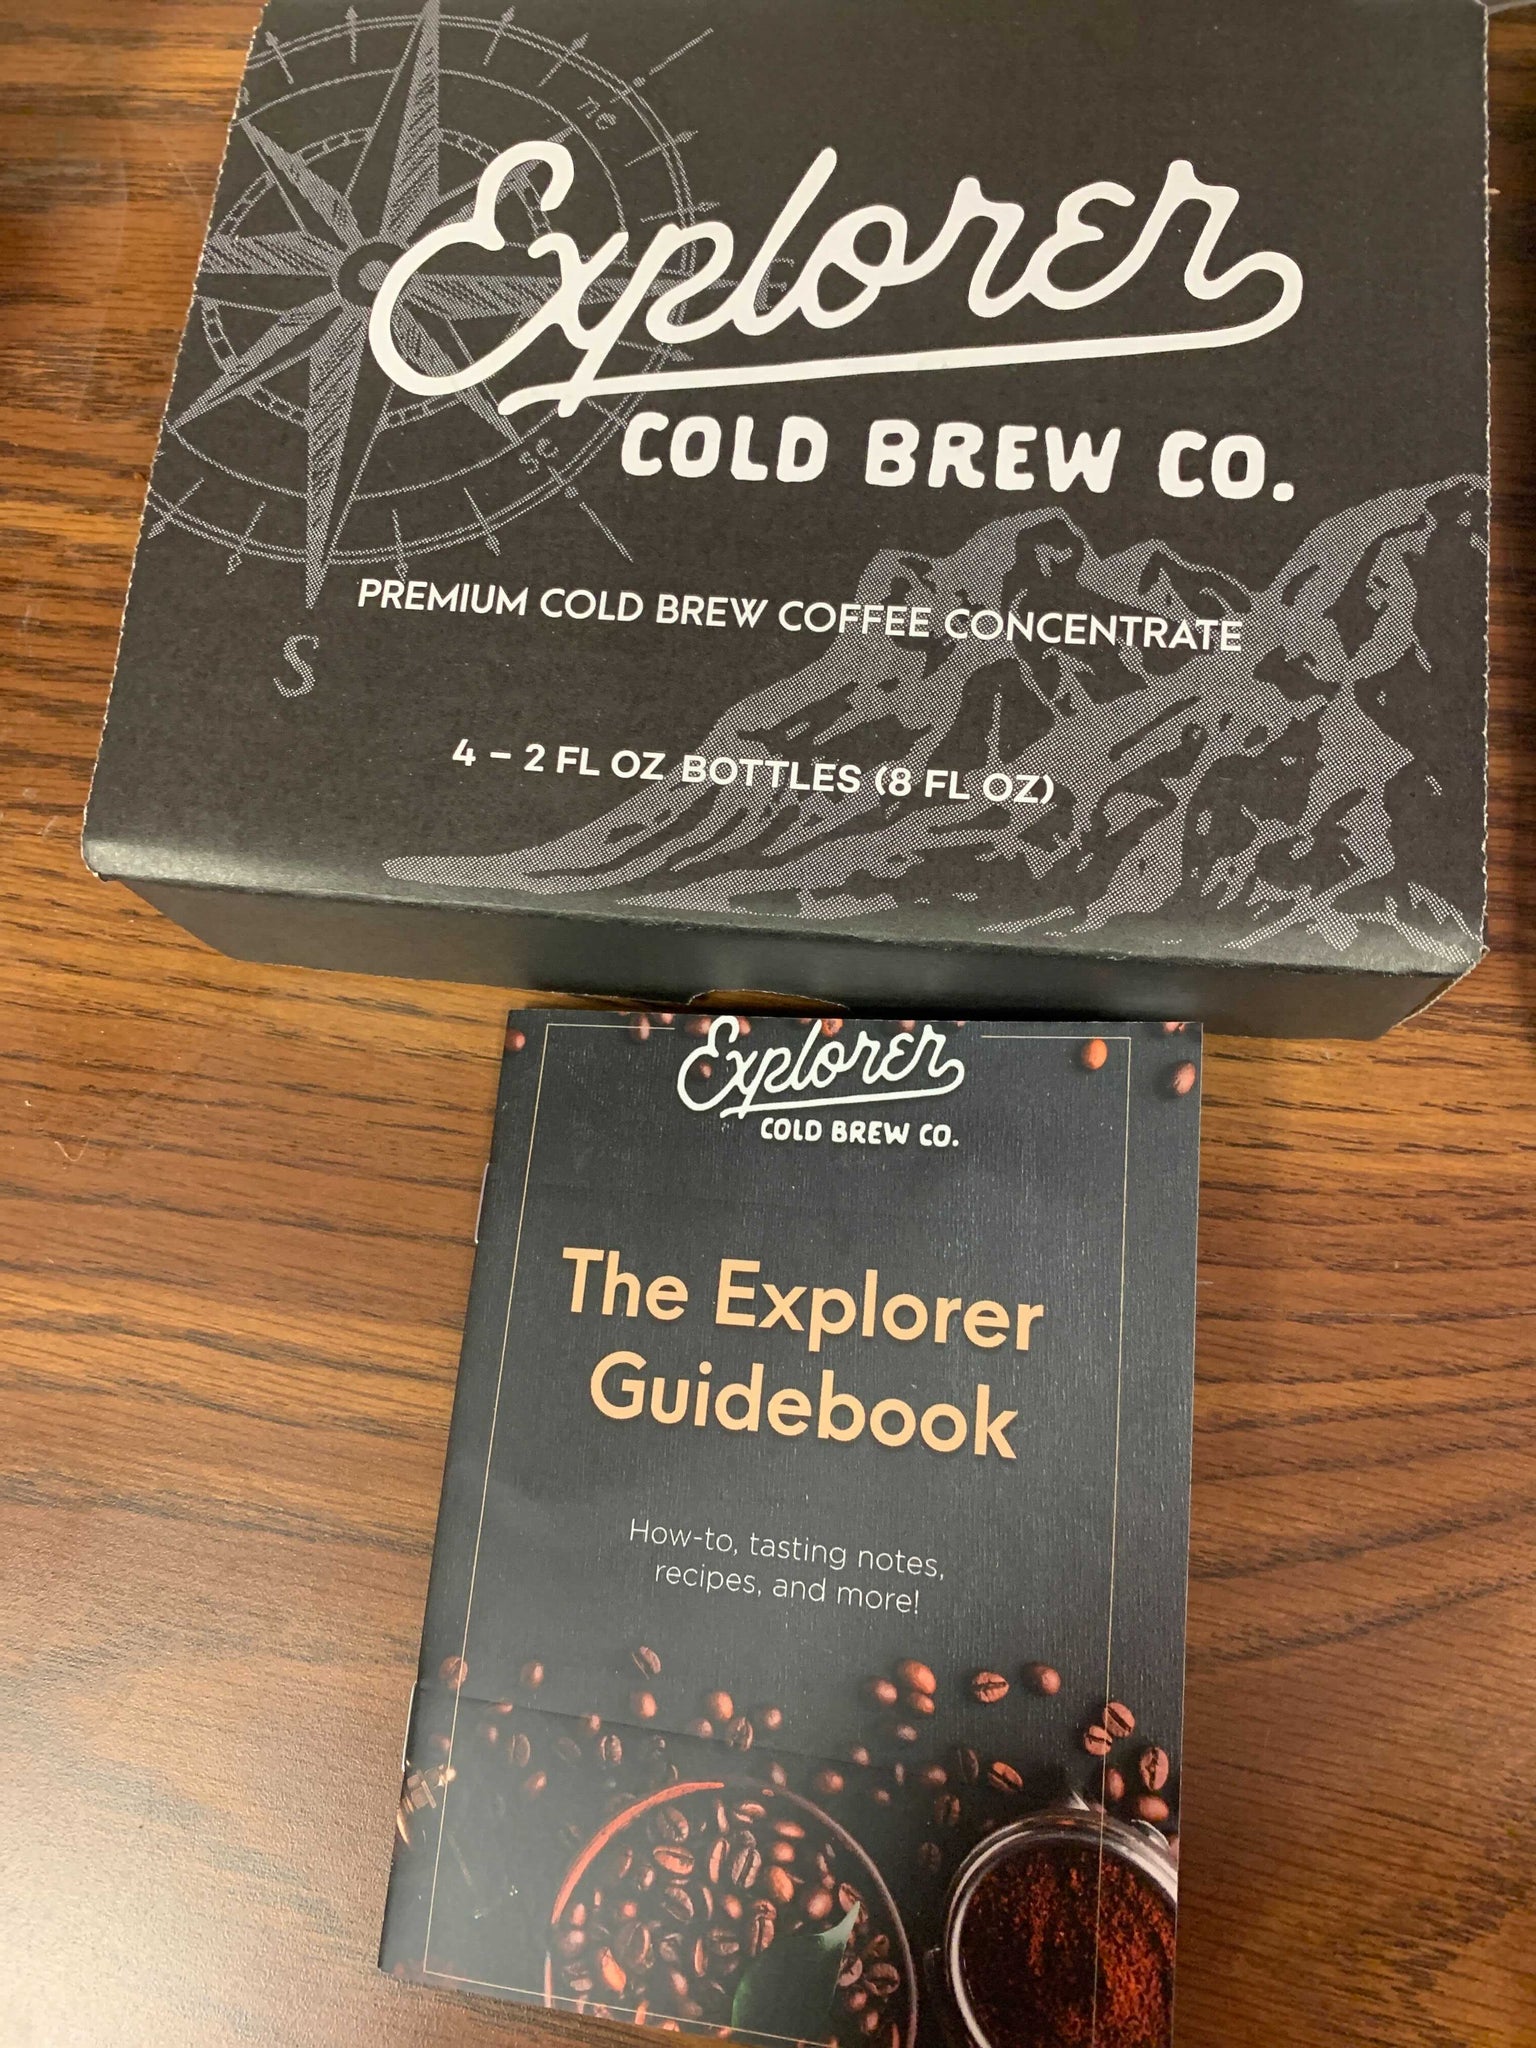 Cold Brew Recipe Kit